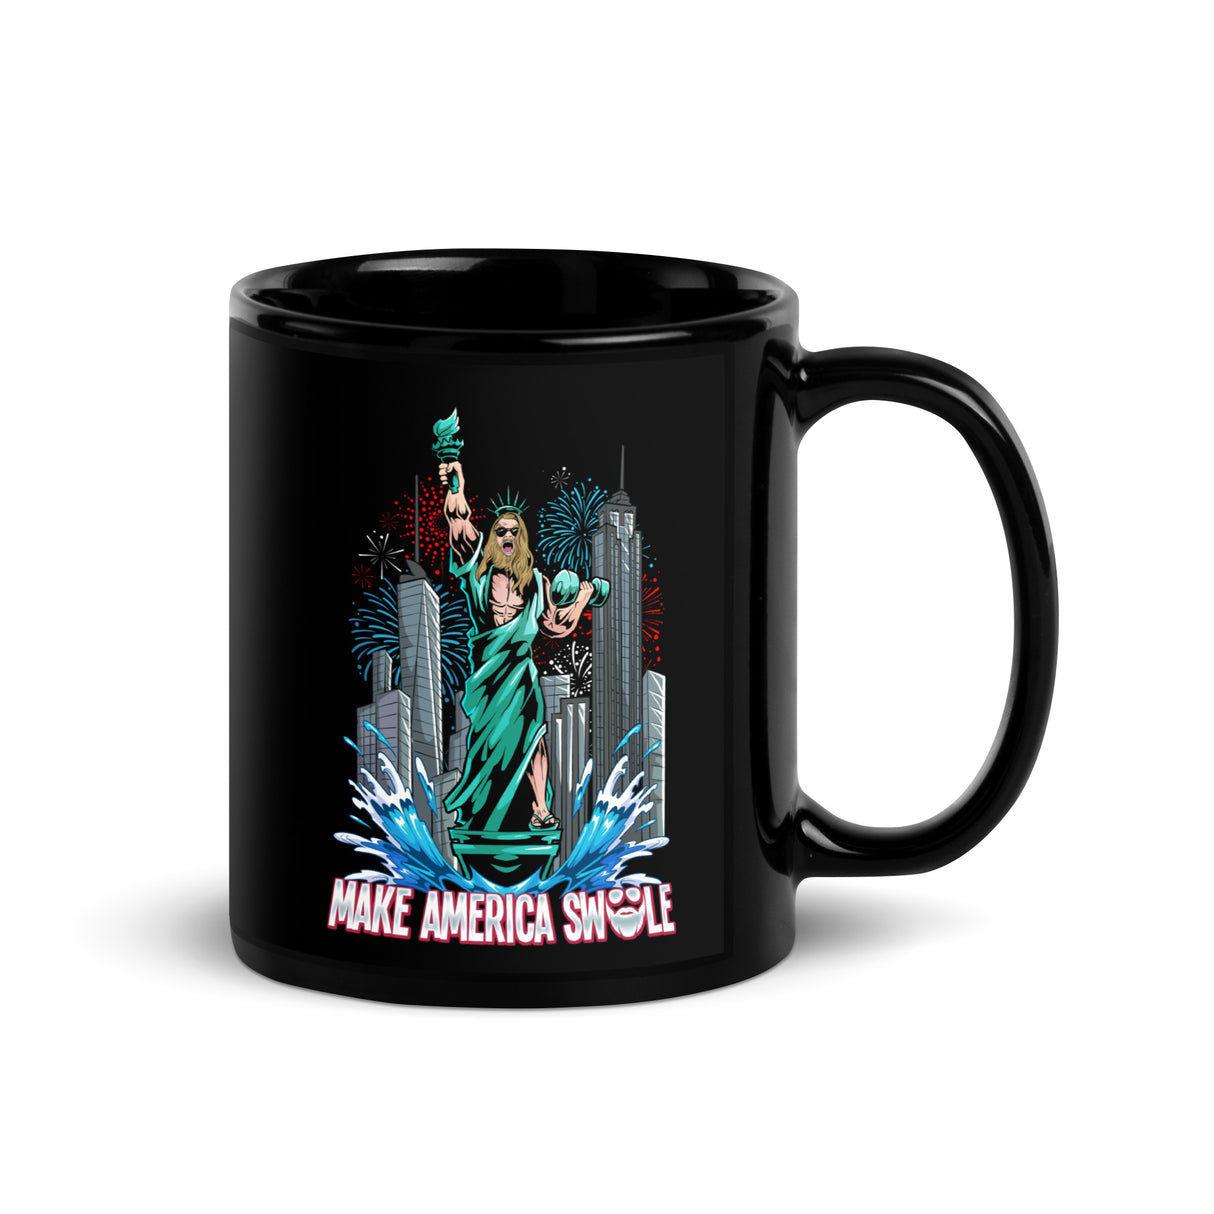 Make America Swole (Image) Mug